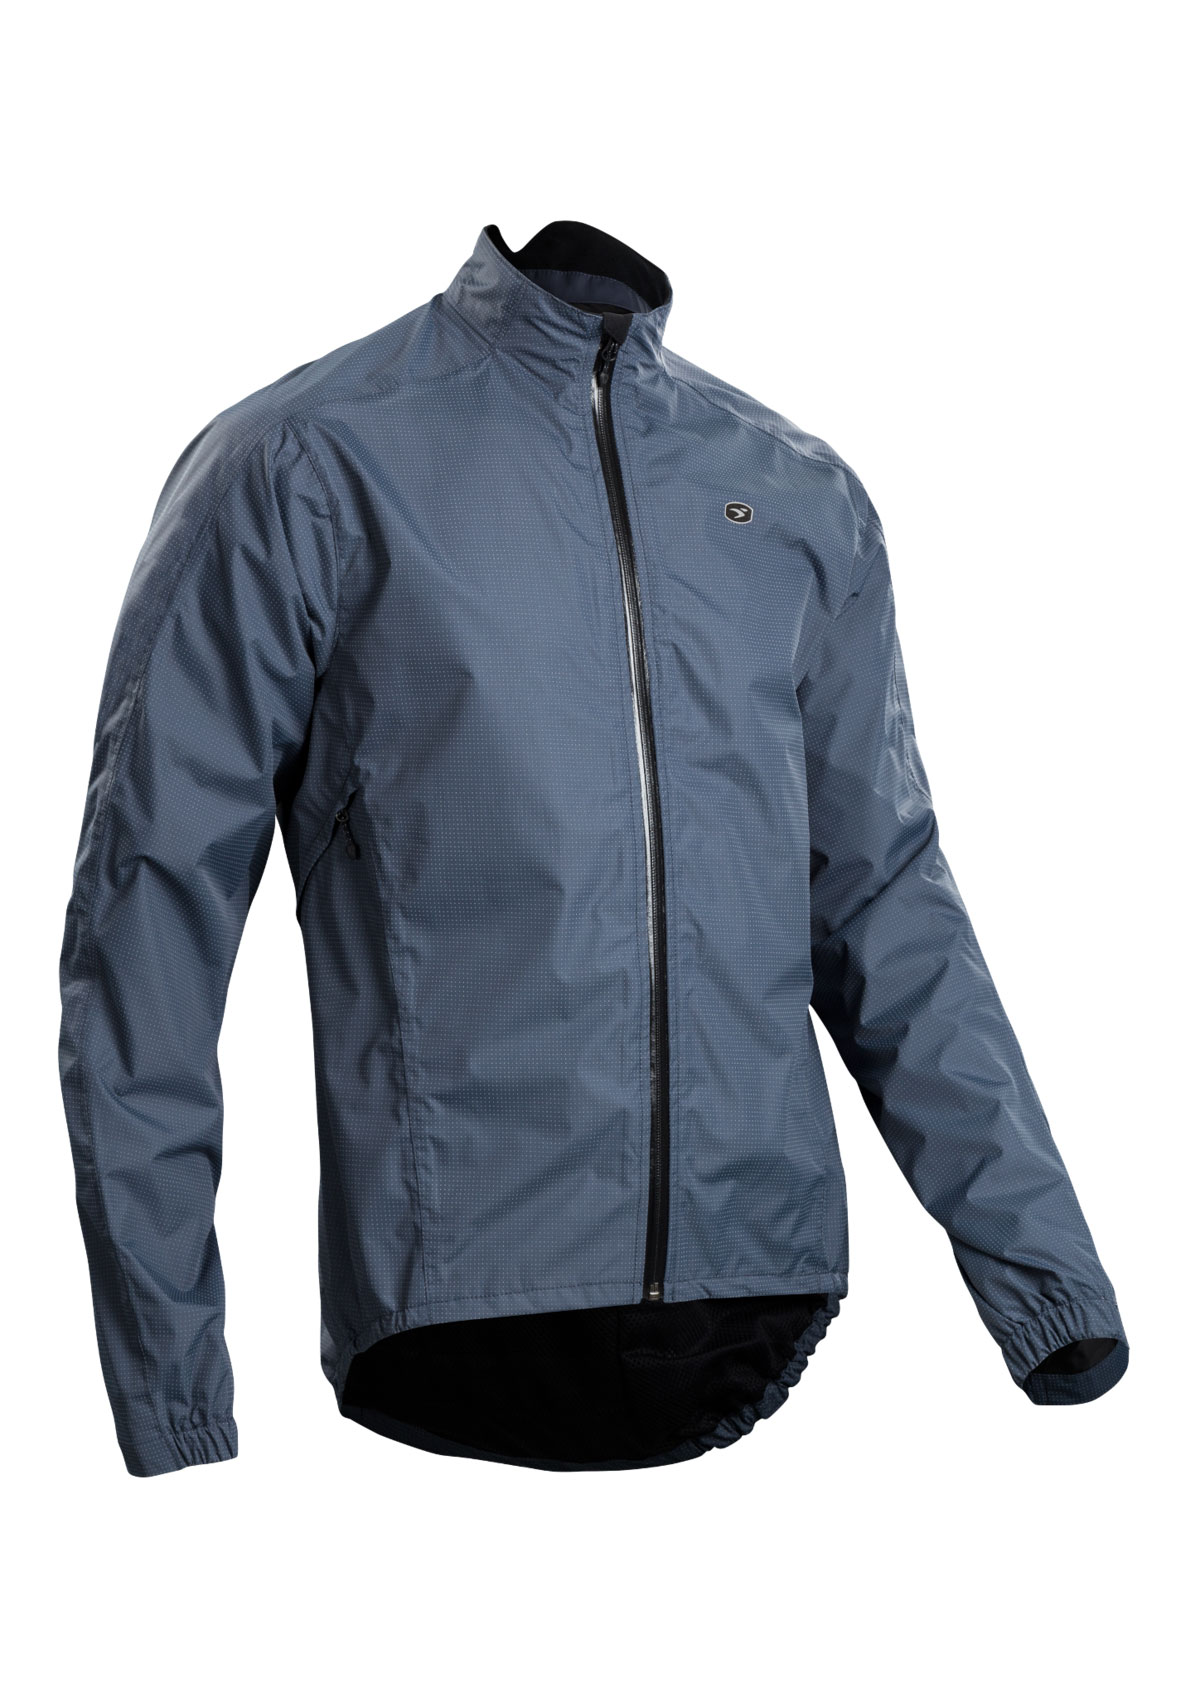 Куртка Sugoi ZAP BIKE, светоотражающая ткань, мужская, GRY (серая), XL фото 